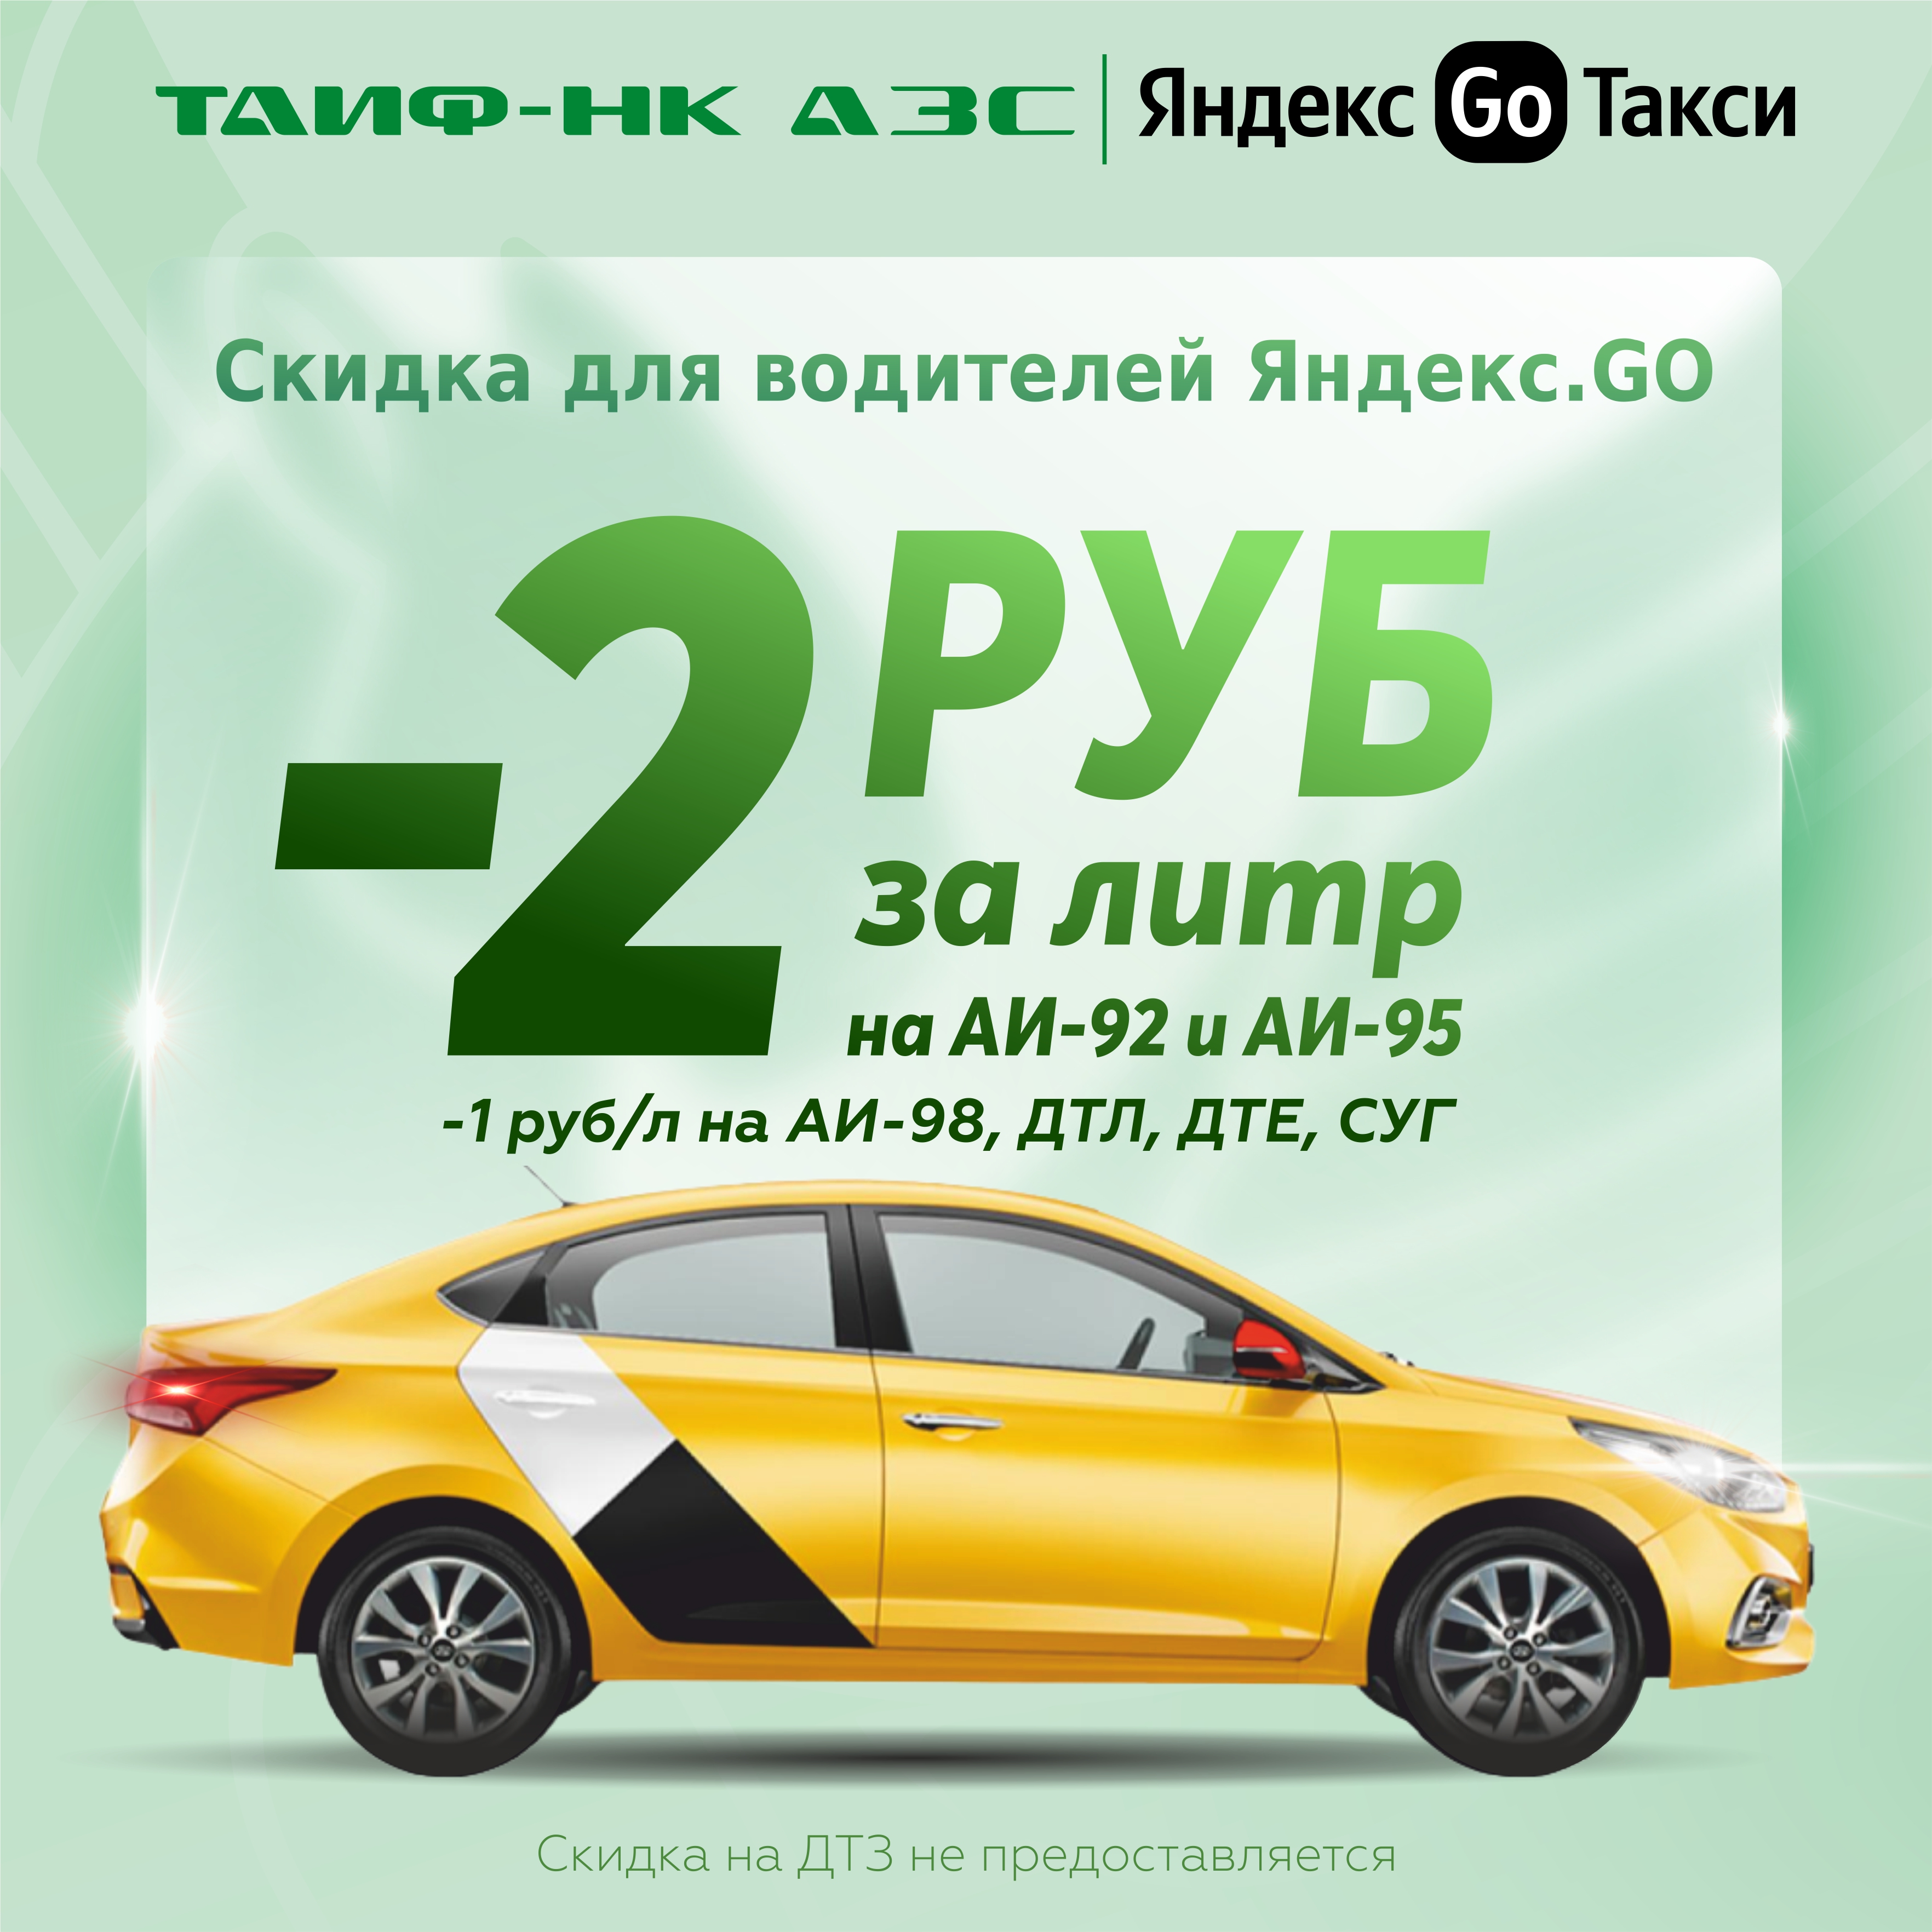 Осенние скидки для водителей "Яндекс.GO" продолжаются!